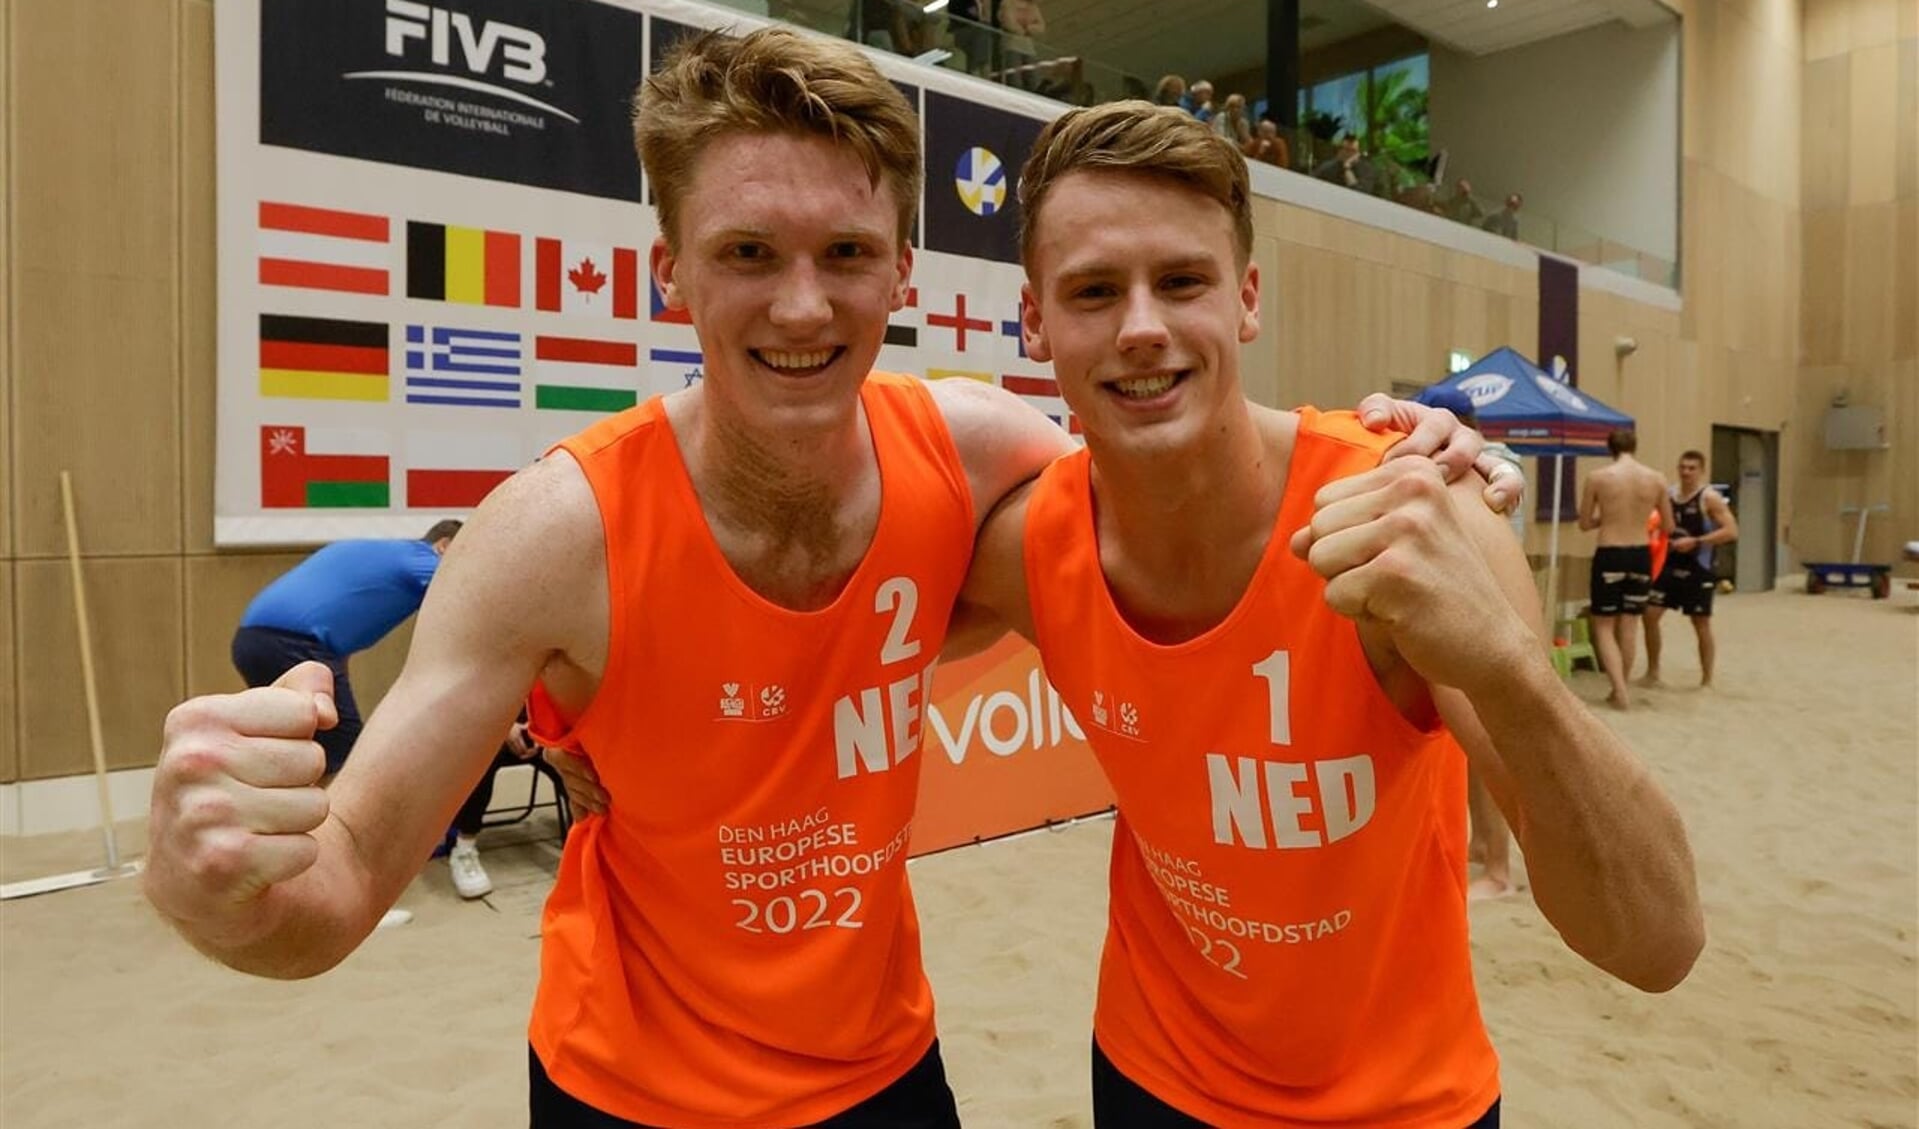 De Boskoopse Beachvolleyballer Sam van der Loo (21) heeft met zijn partner Quinten Groenewold (18) een vijfde plaats behaald tijdens het Beach World Tour toernooi. 